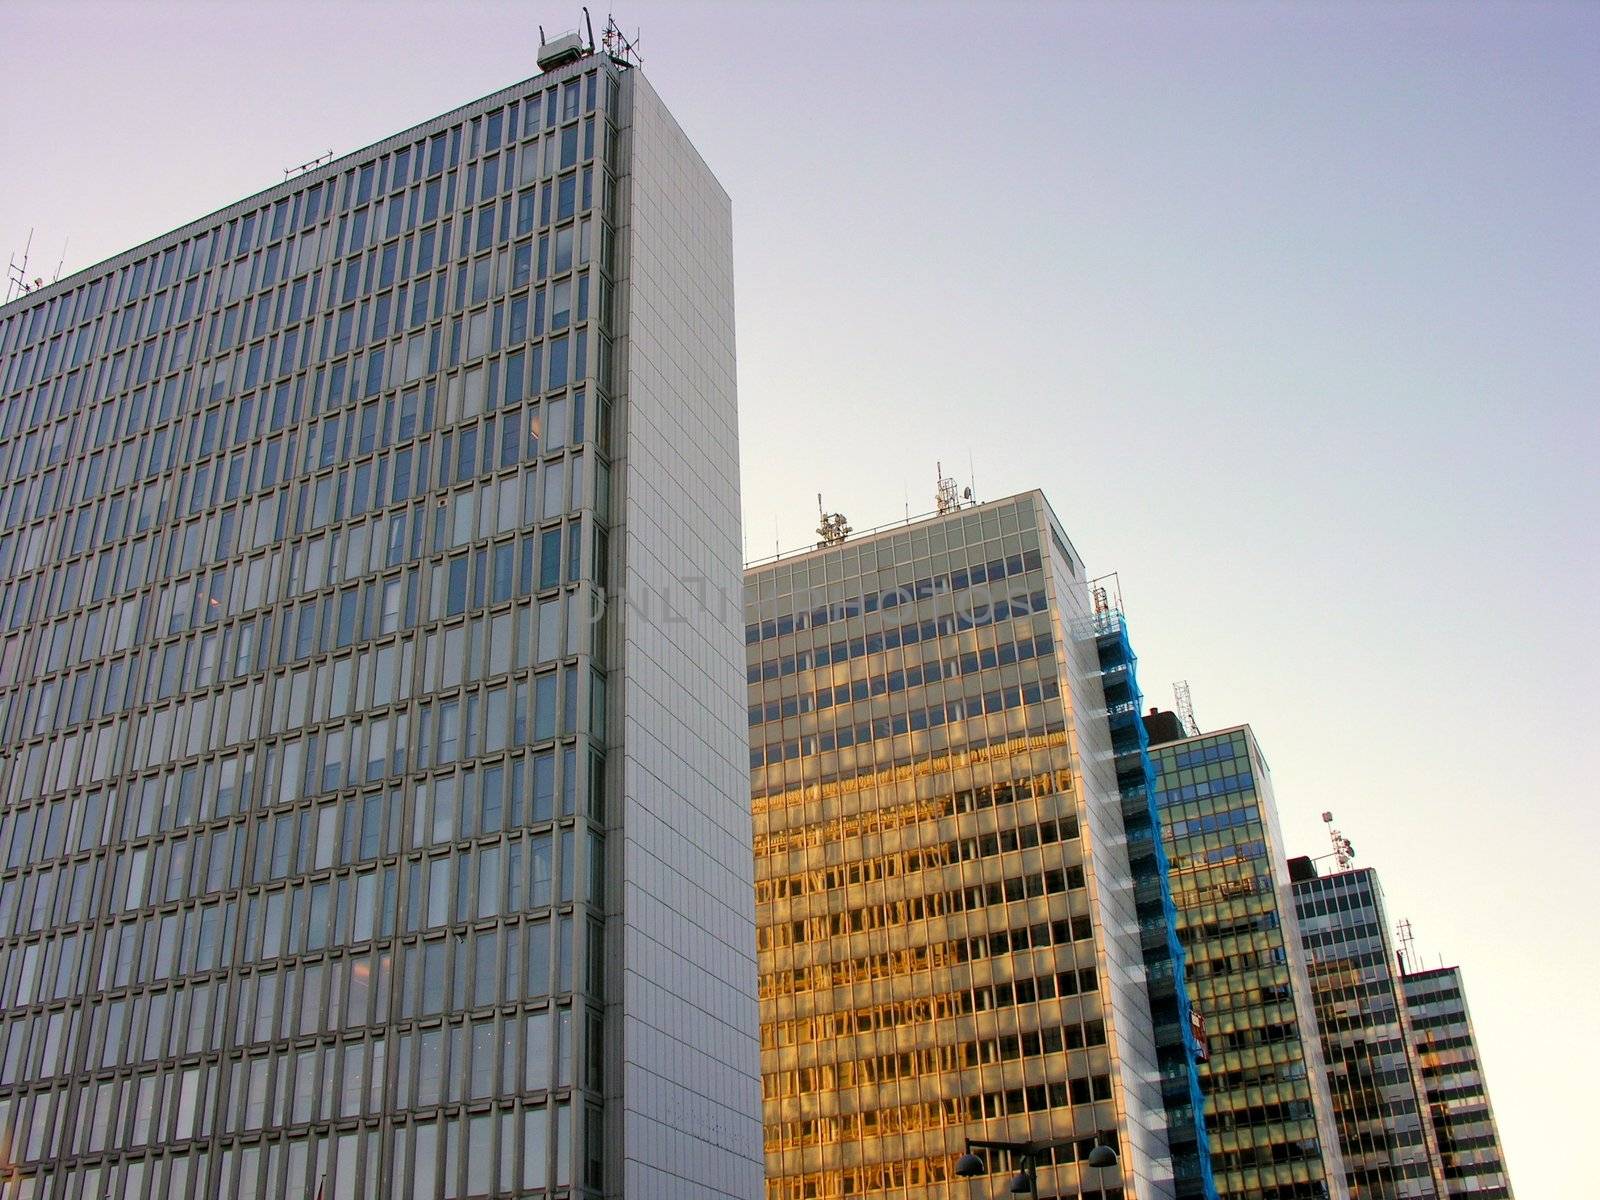 Five skyscraper by rigamondis